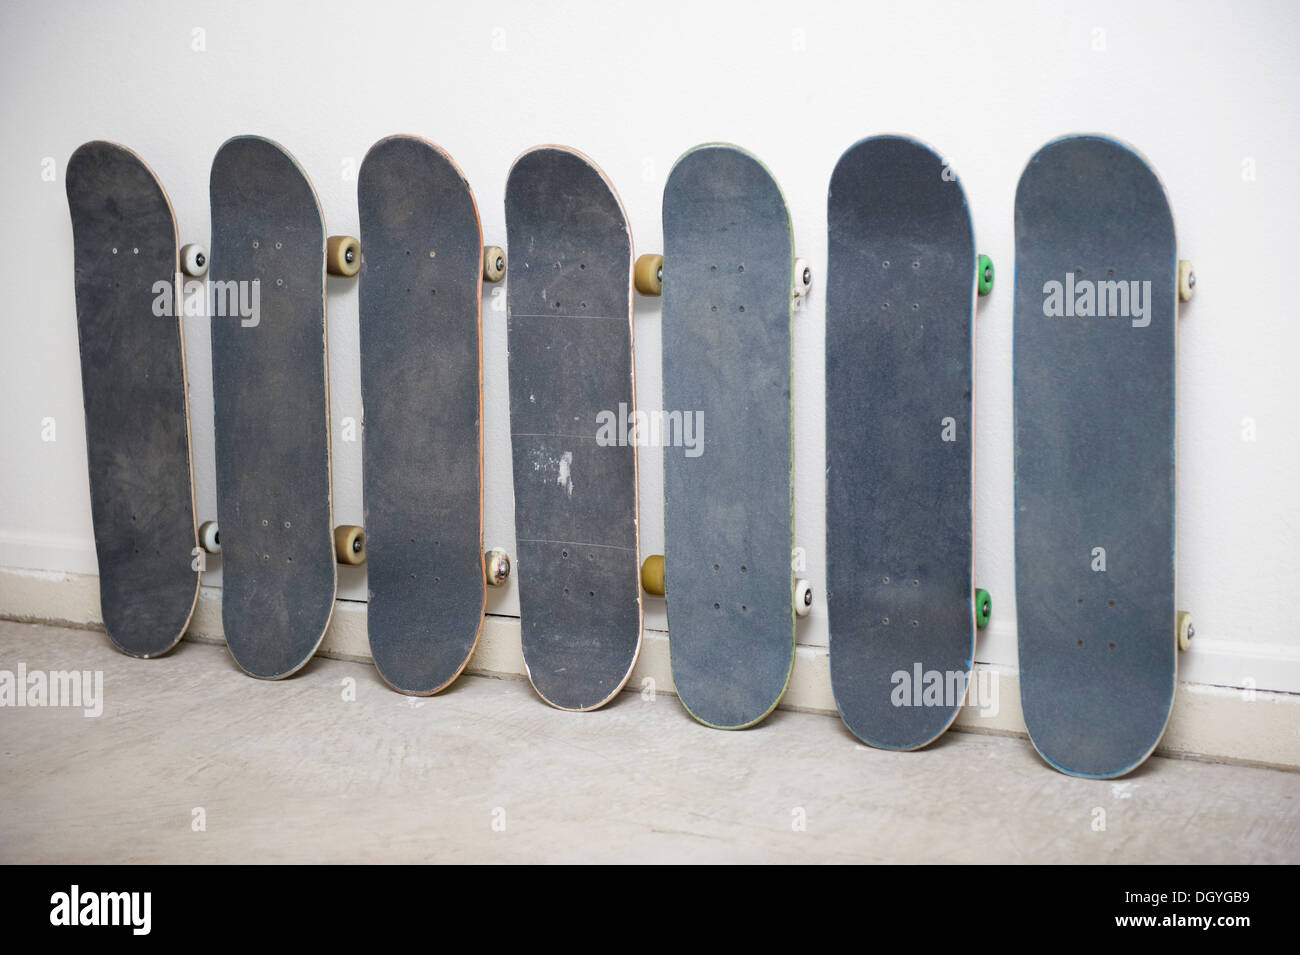 Reihe von Skateboards an Wand, man hat ein Bild von einem indianischen drauf Stockfoto